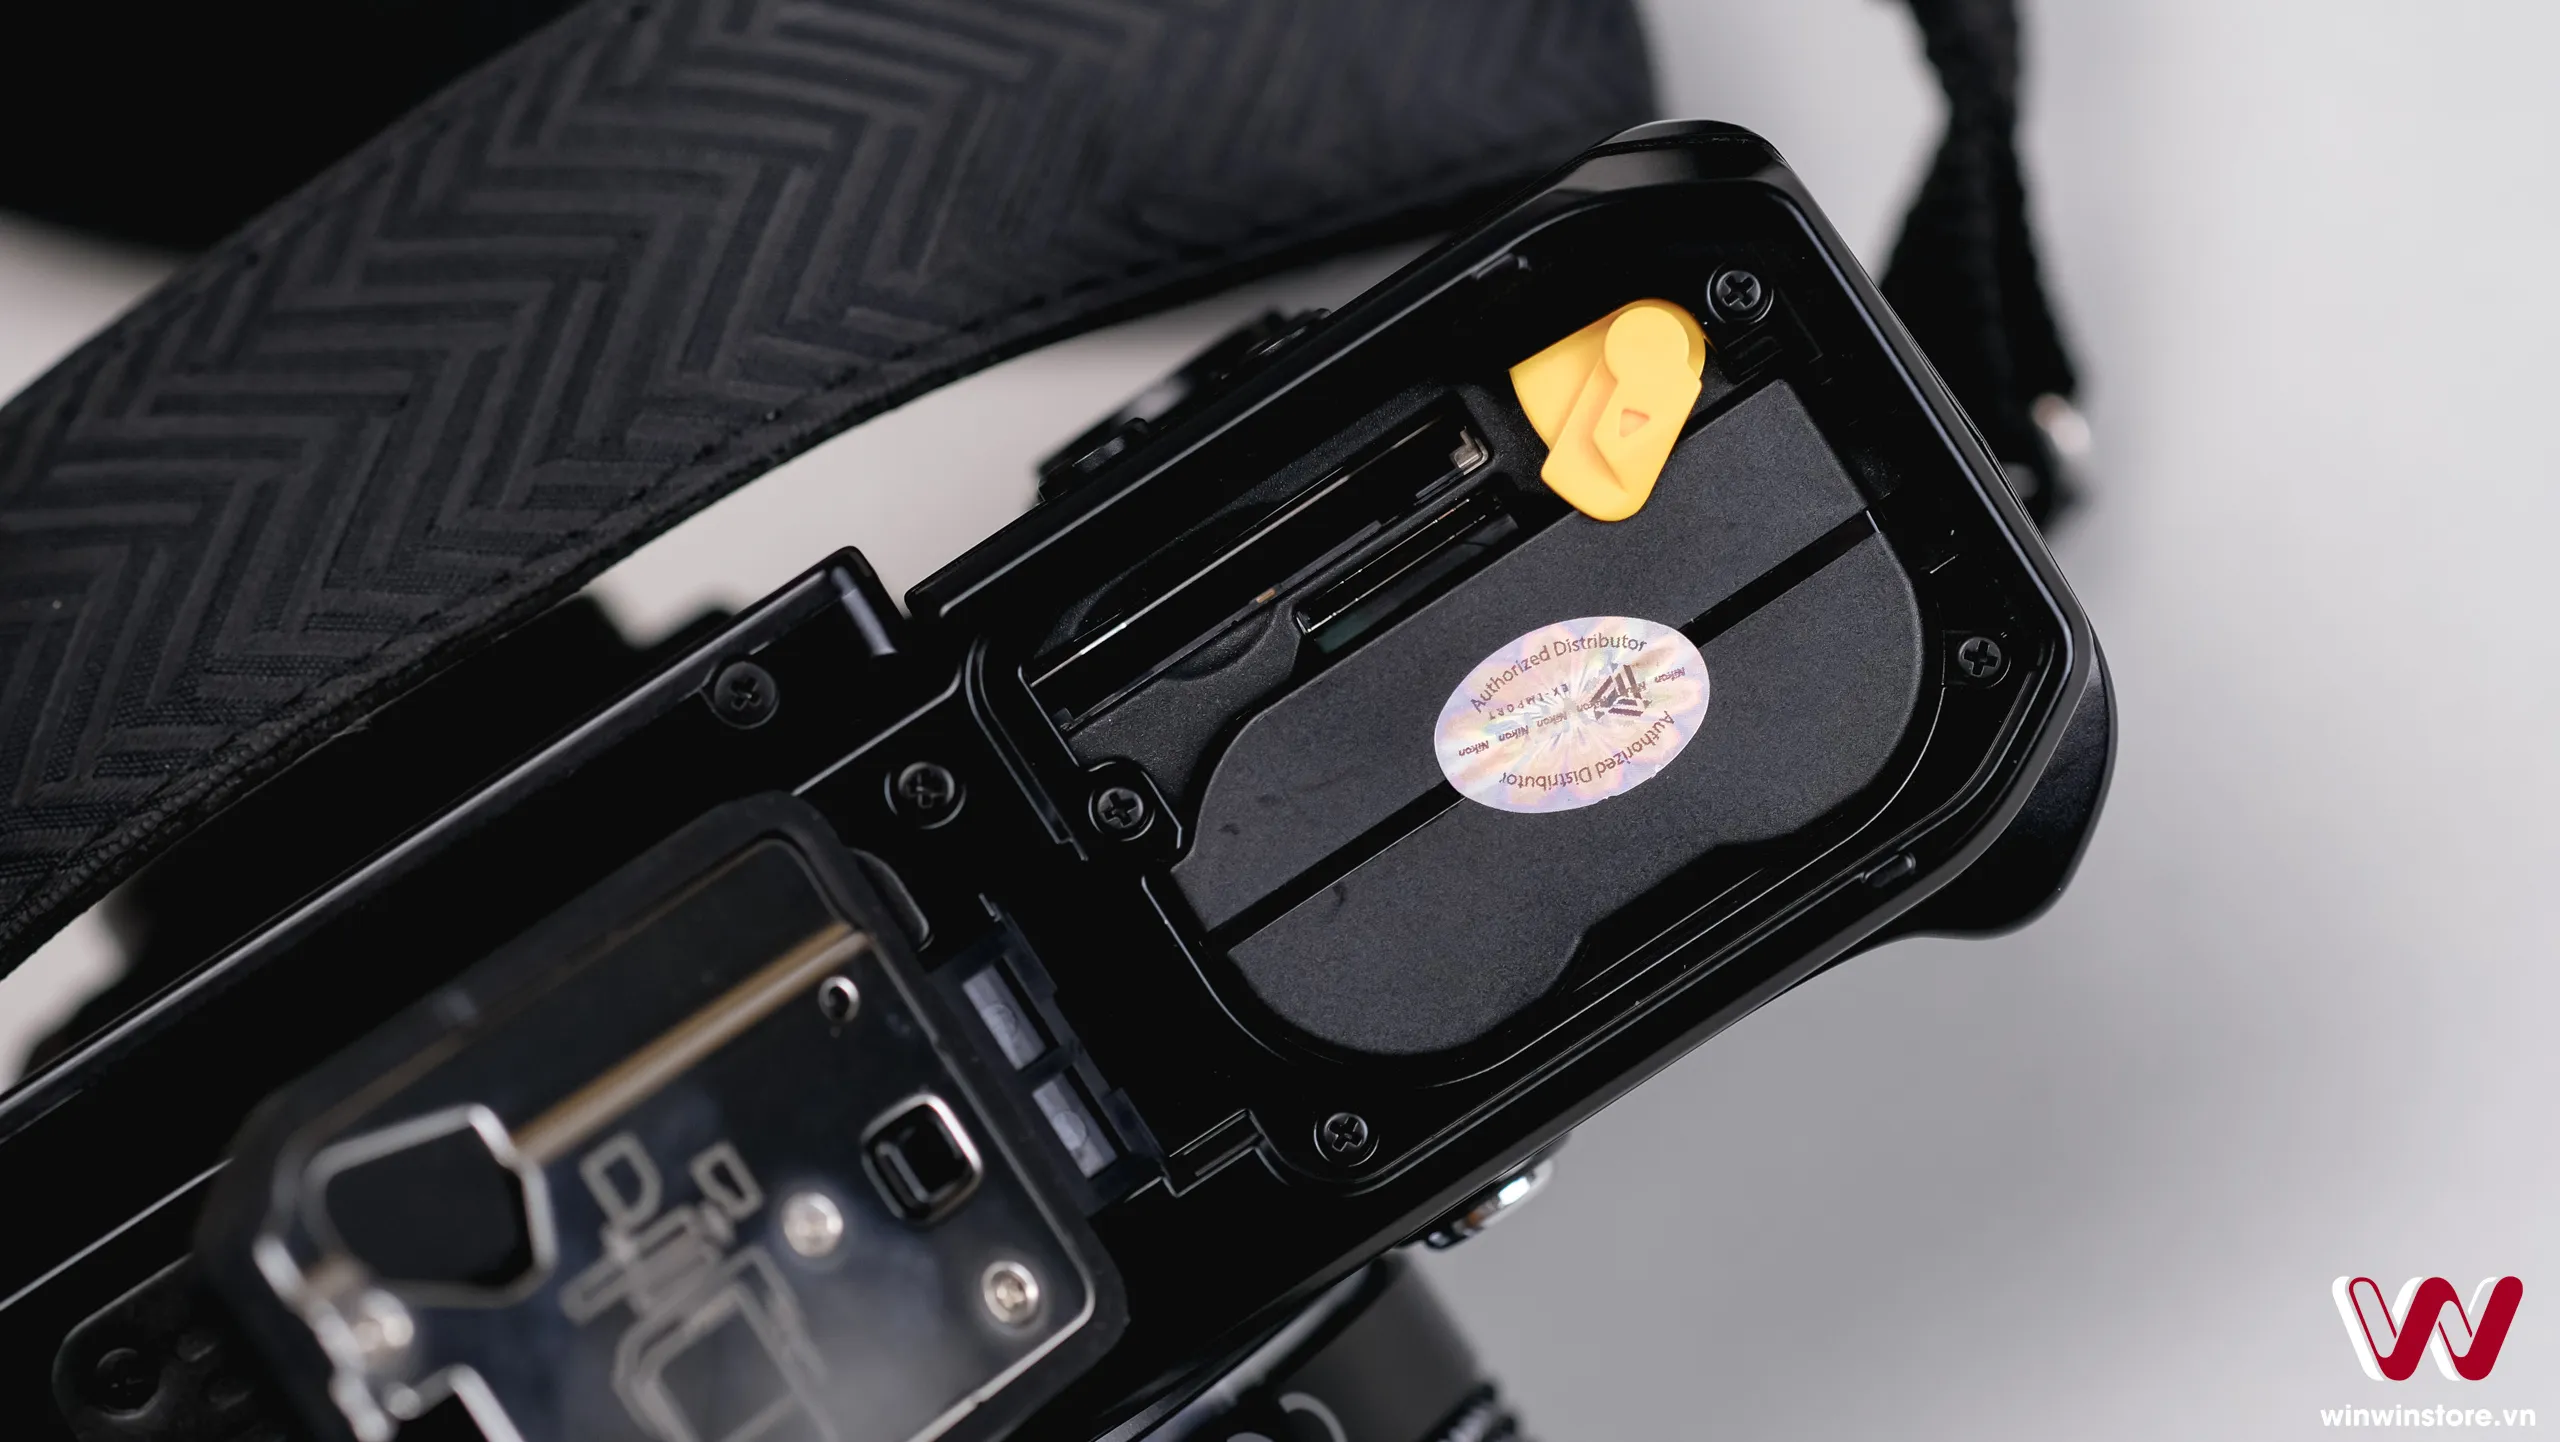 Trên tay máy ảnh Nikon Zf: Hiện đại kết hợp cổ điển, trải nghiệm hoài niệm